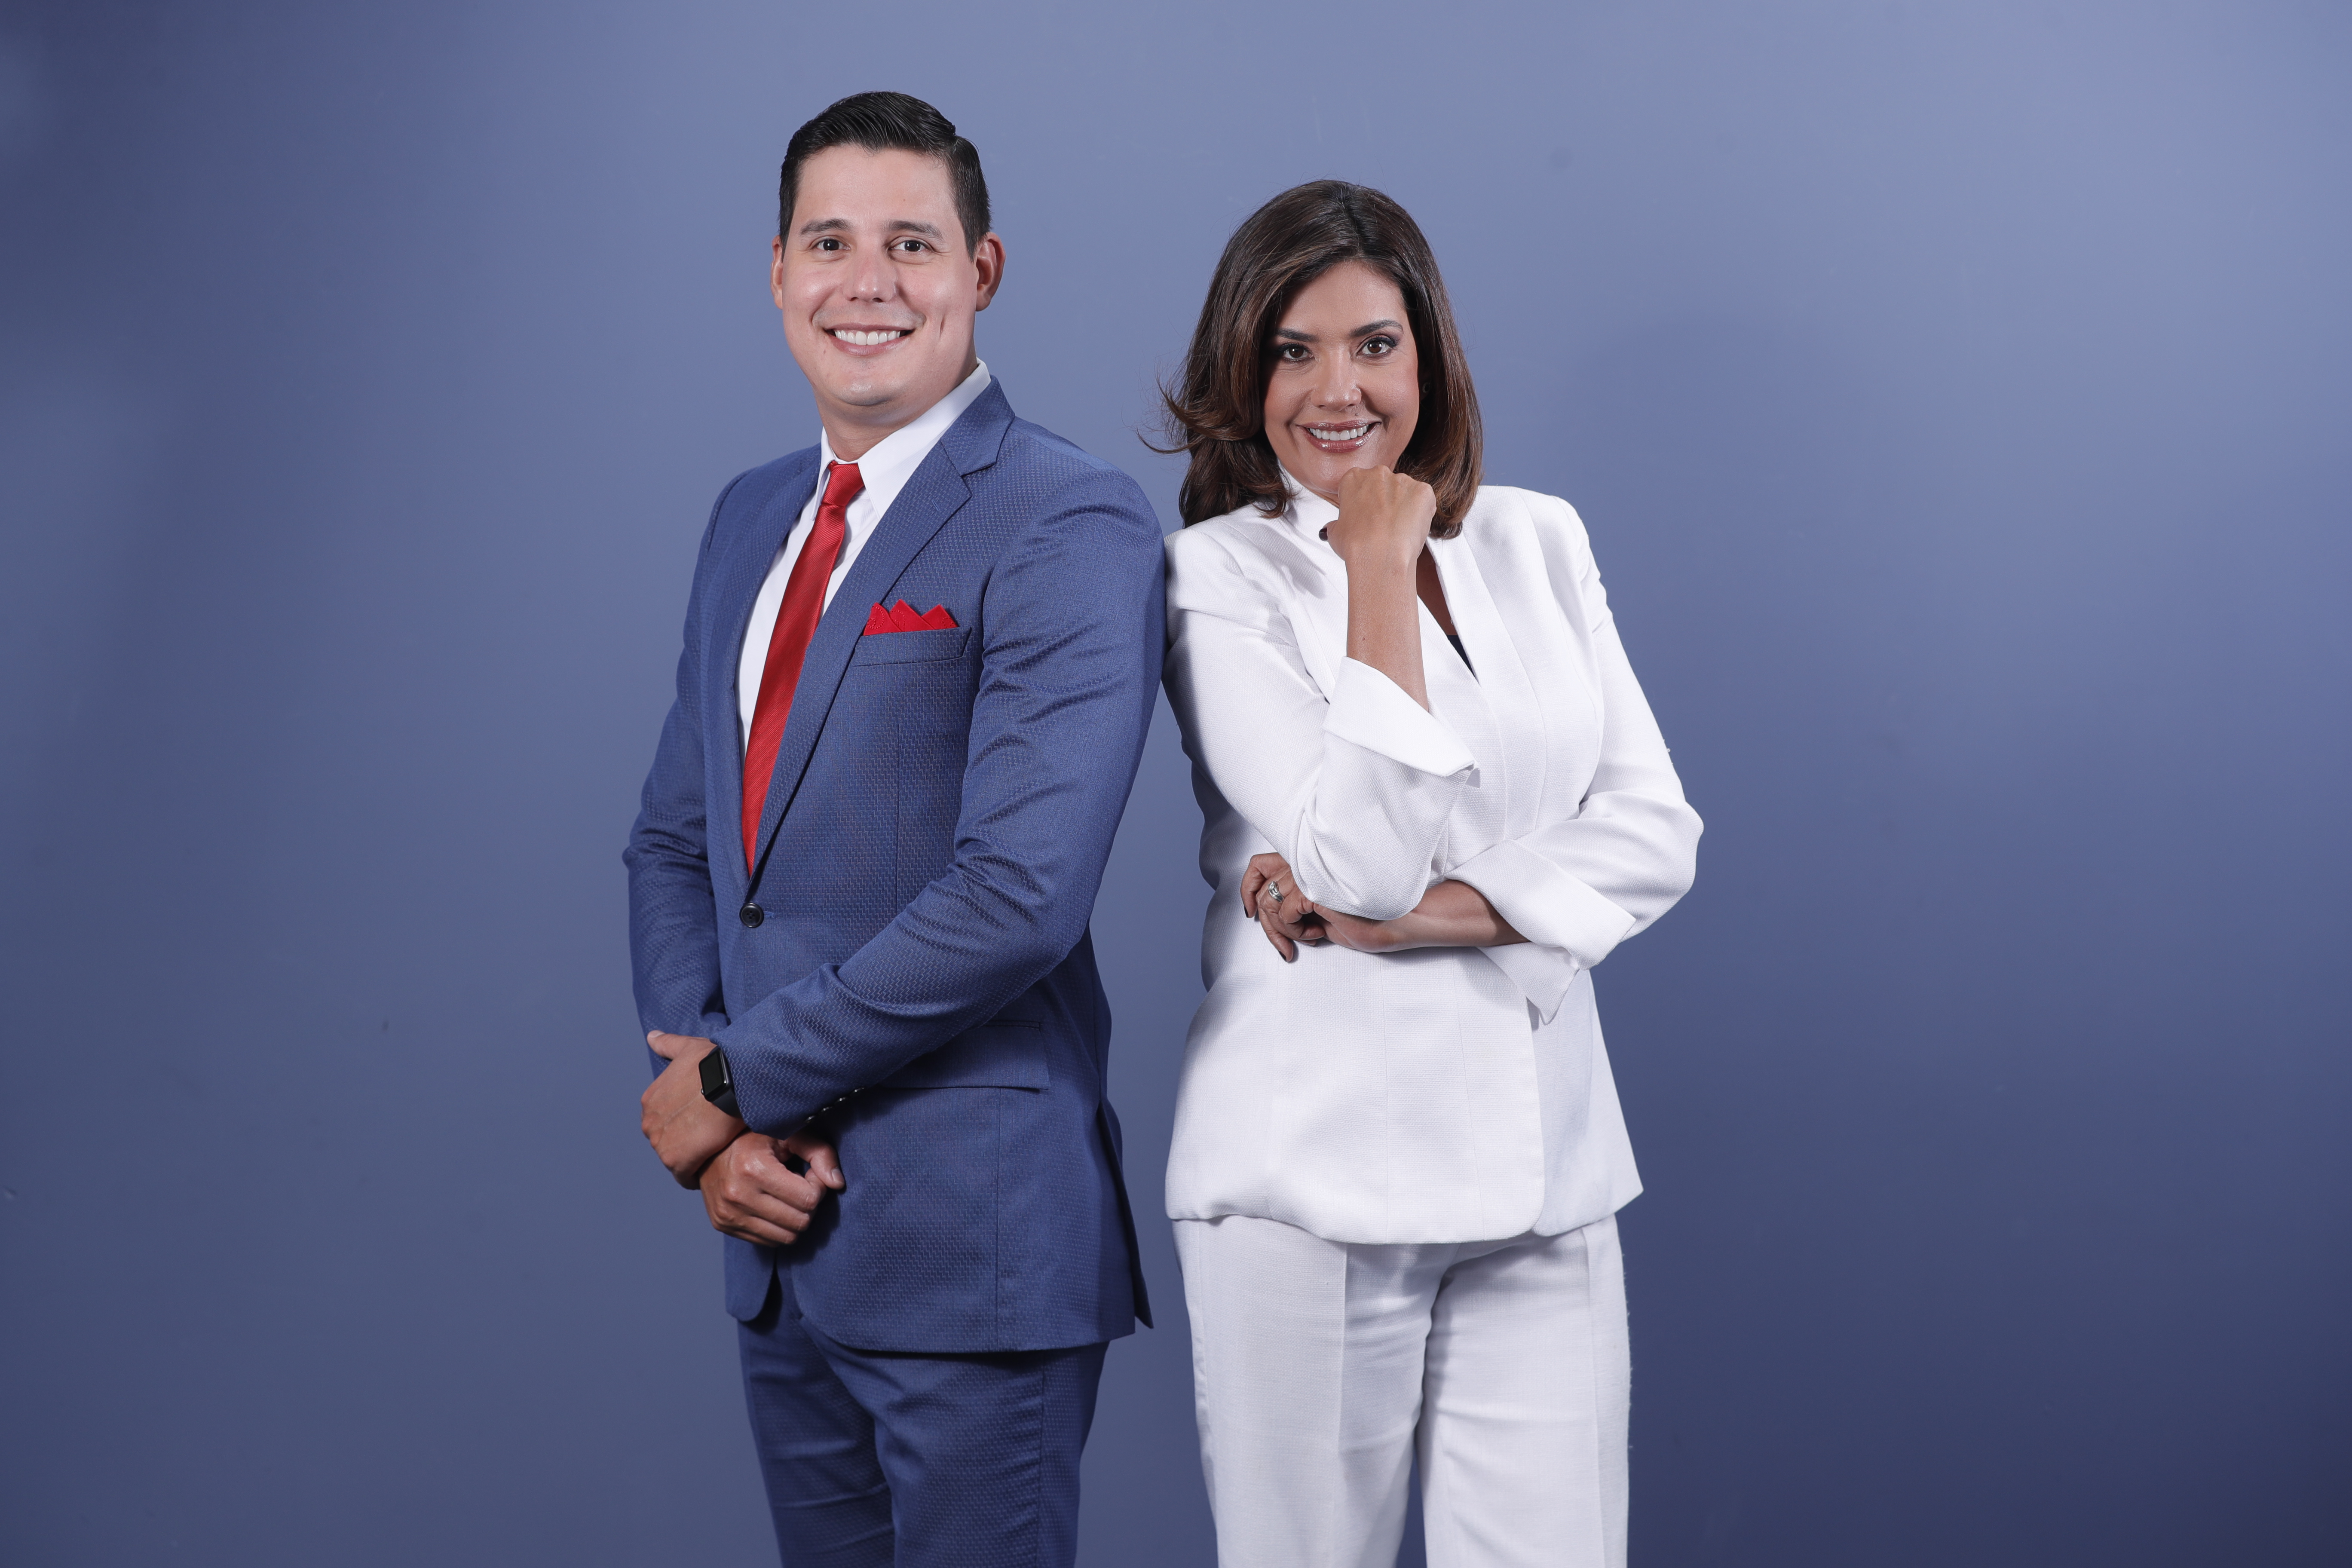 Maria Luisa Gómez y Alberto Toro Vielma son los presentadores de la Emisión Estelar de Noticiero Guatevisión, que se transmite de lunes a viernes a las 21 horas. (Foto Prensa Libre Esbin García)